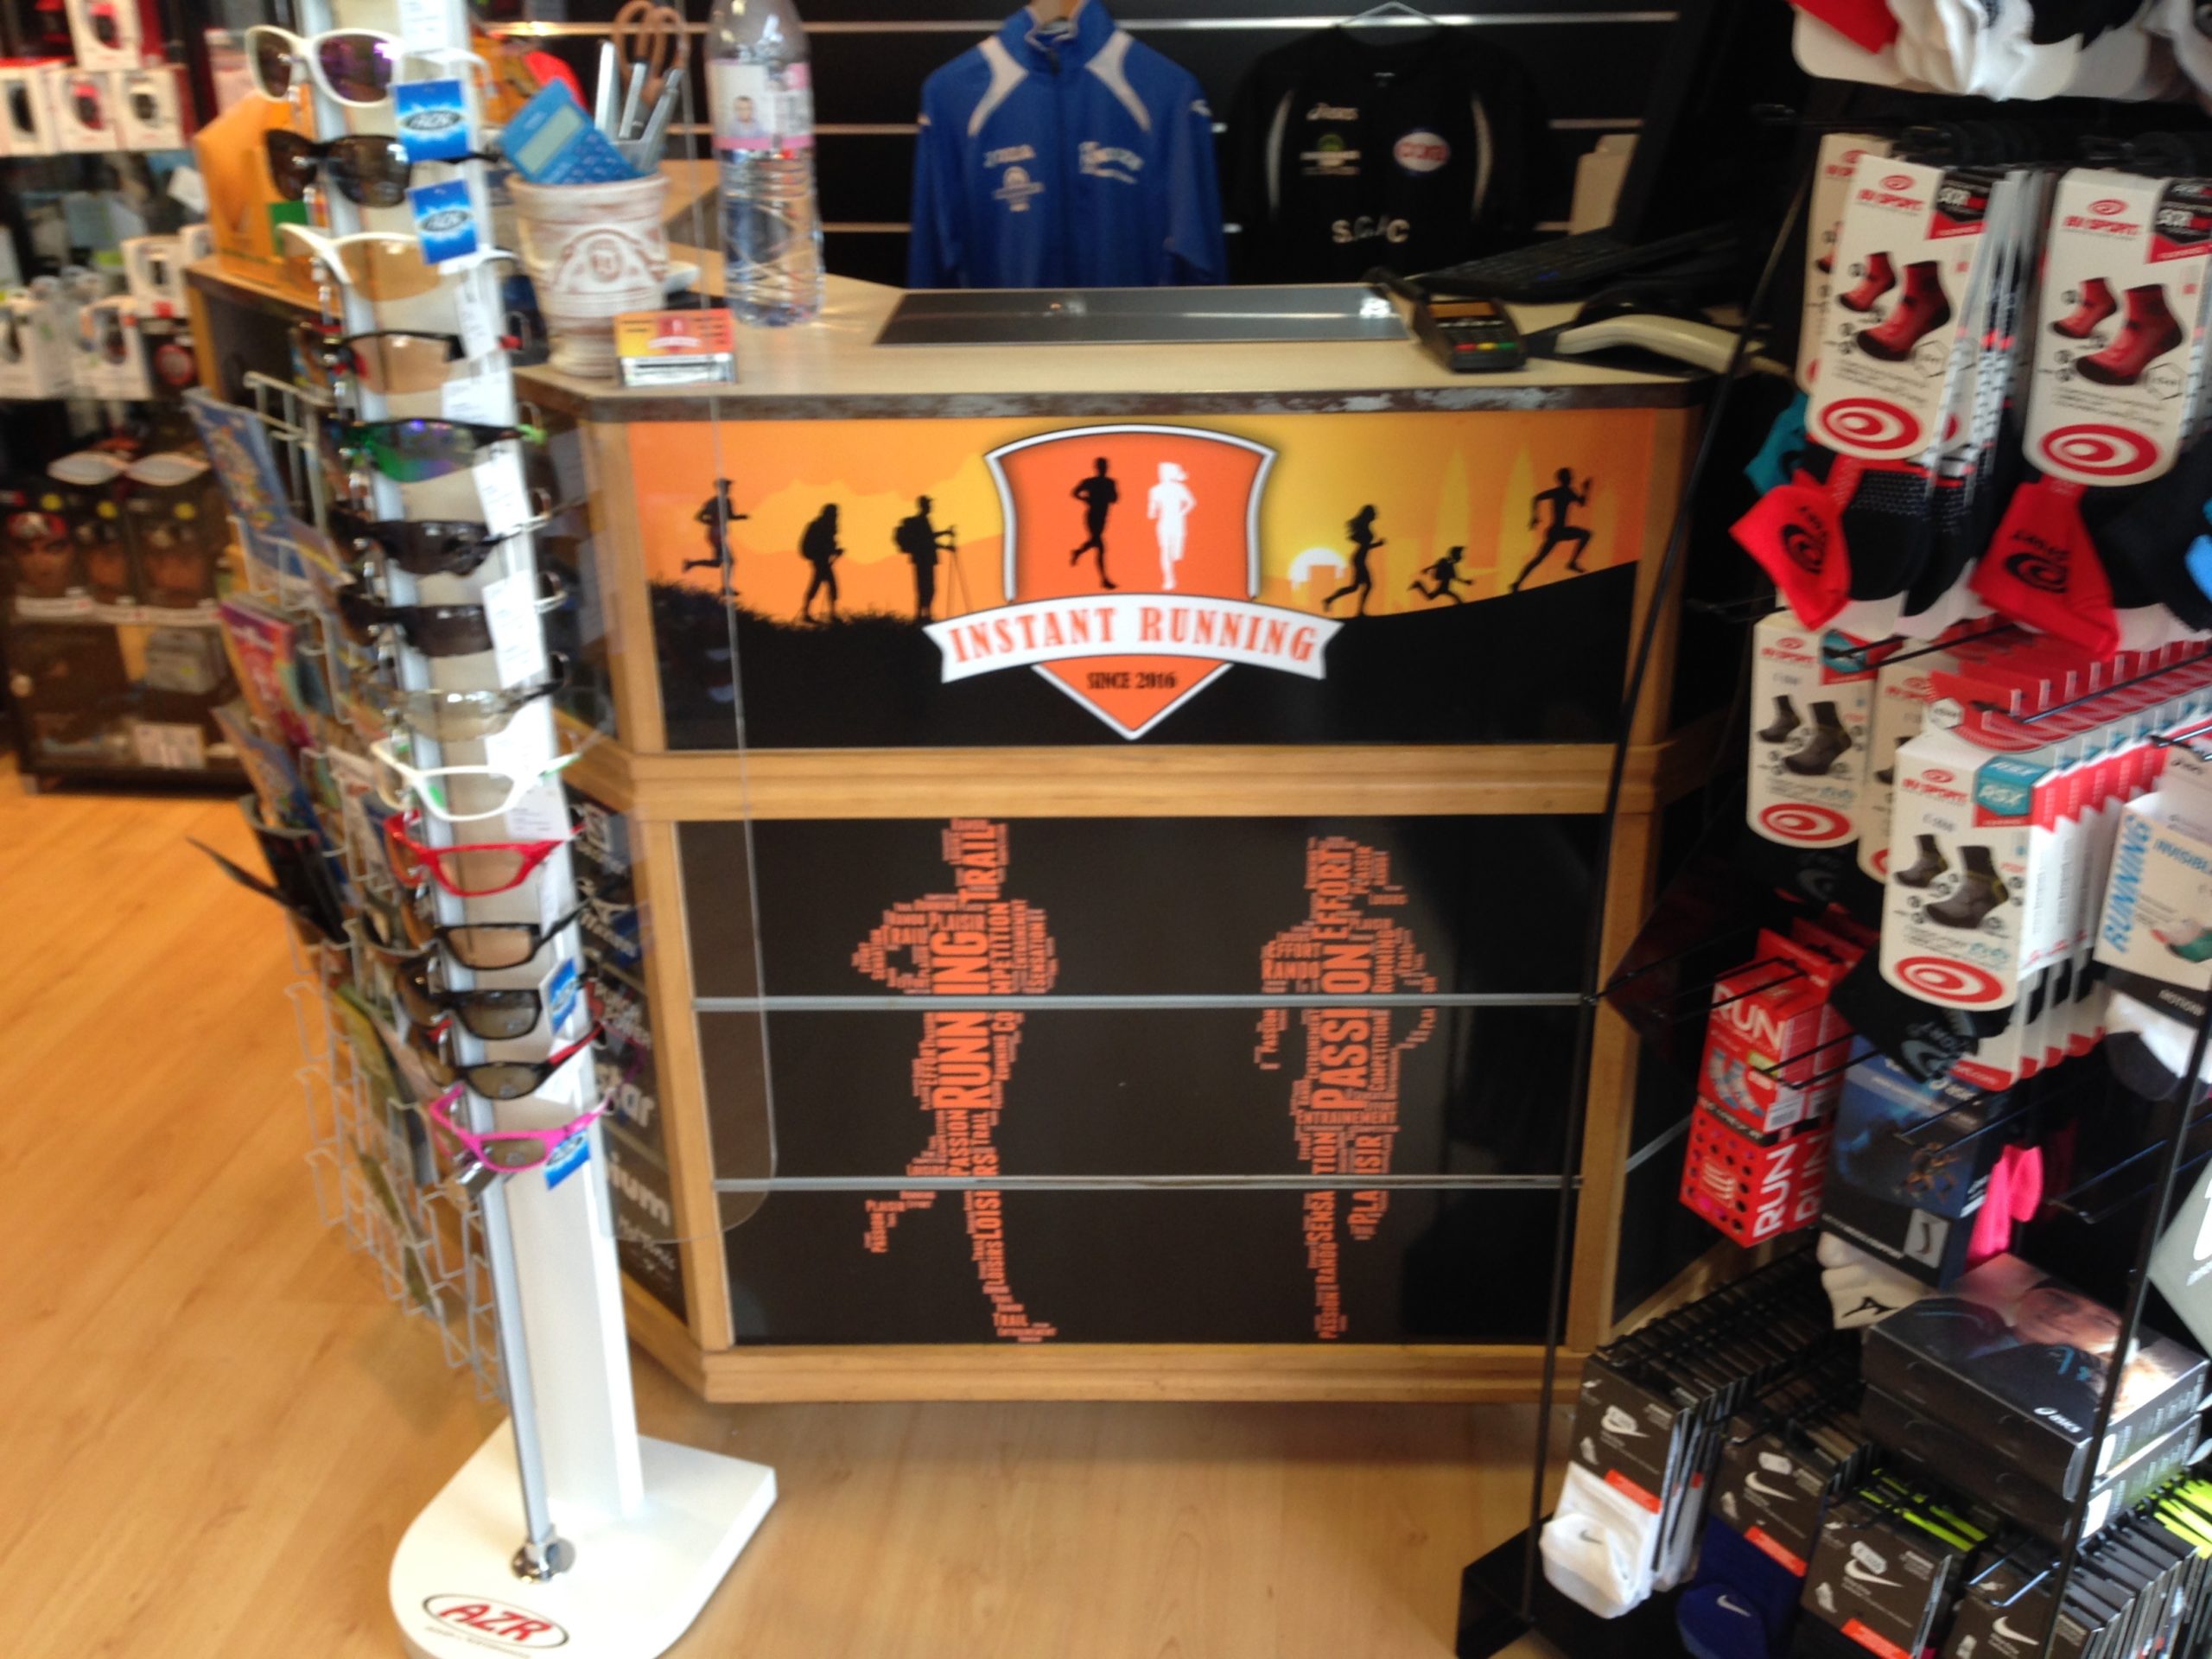 Habillage intérieur d'Instant Running Alès, magasin spécialisé dans la vente d'articles de running